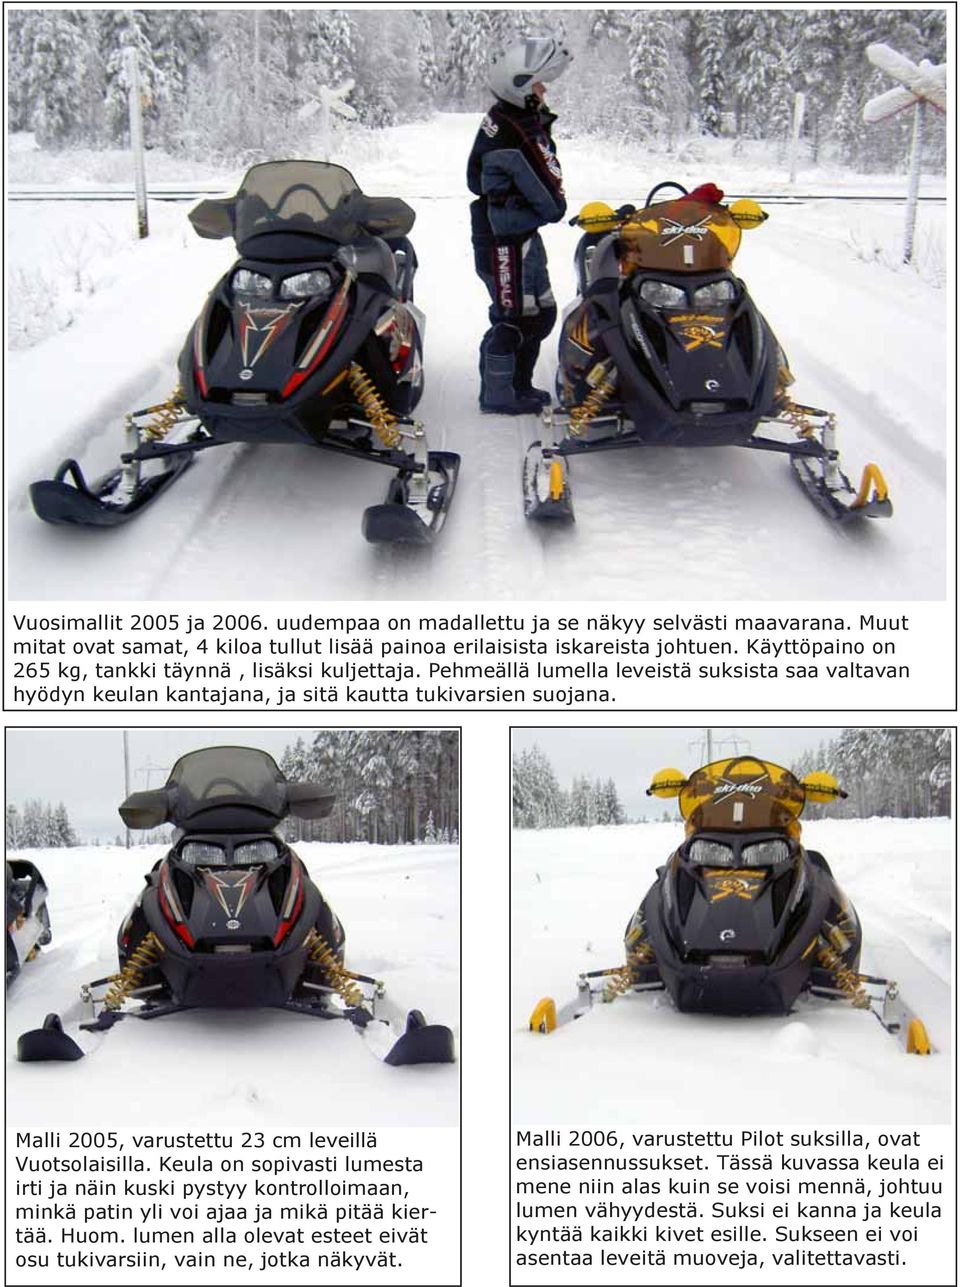 Malli 2005, varustettu 23 cm leveillä Vuotsolaisilla. Keula on sopivasti lumesta irti ja näin kuski pystyy kontrolloimaan, minkä patin yli voi ajaa ja mikä pitää kiertää. Huom.